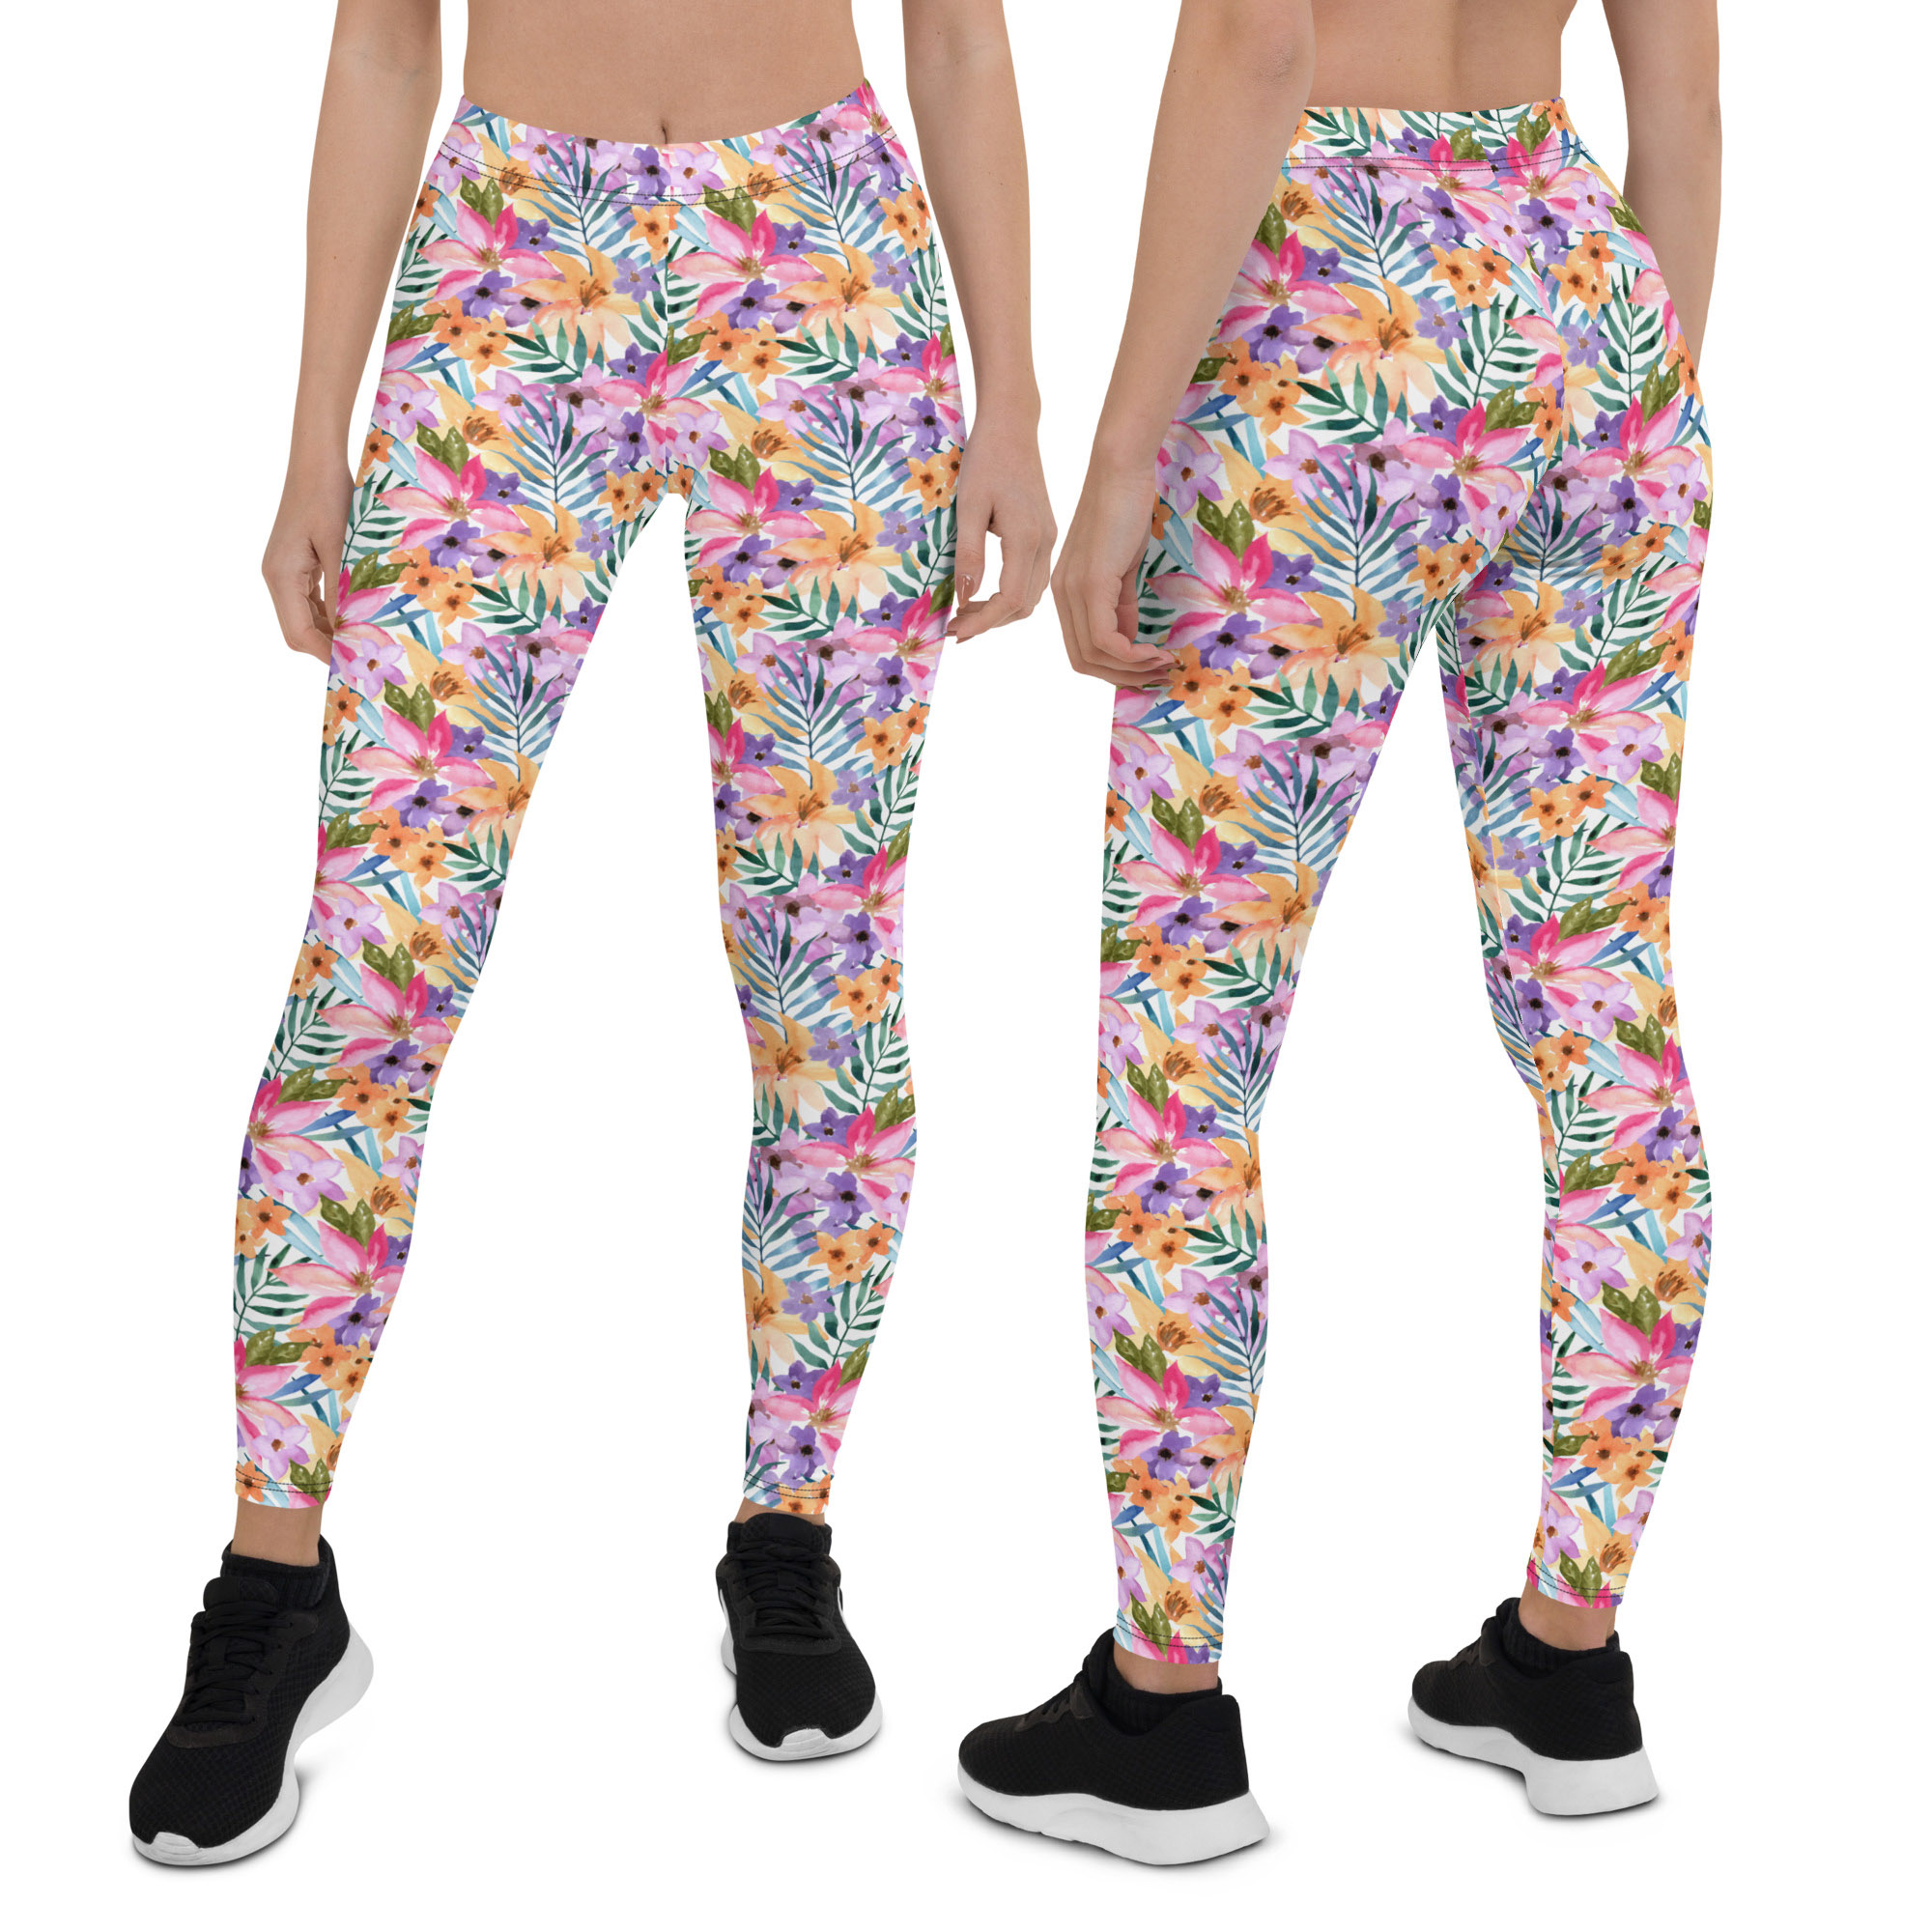 floral-print leggings